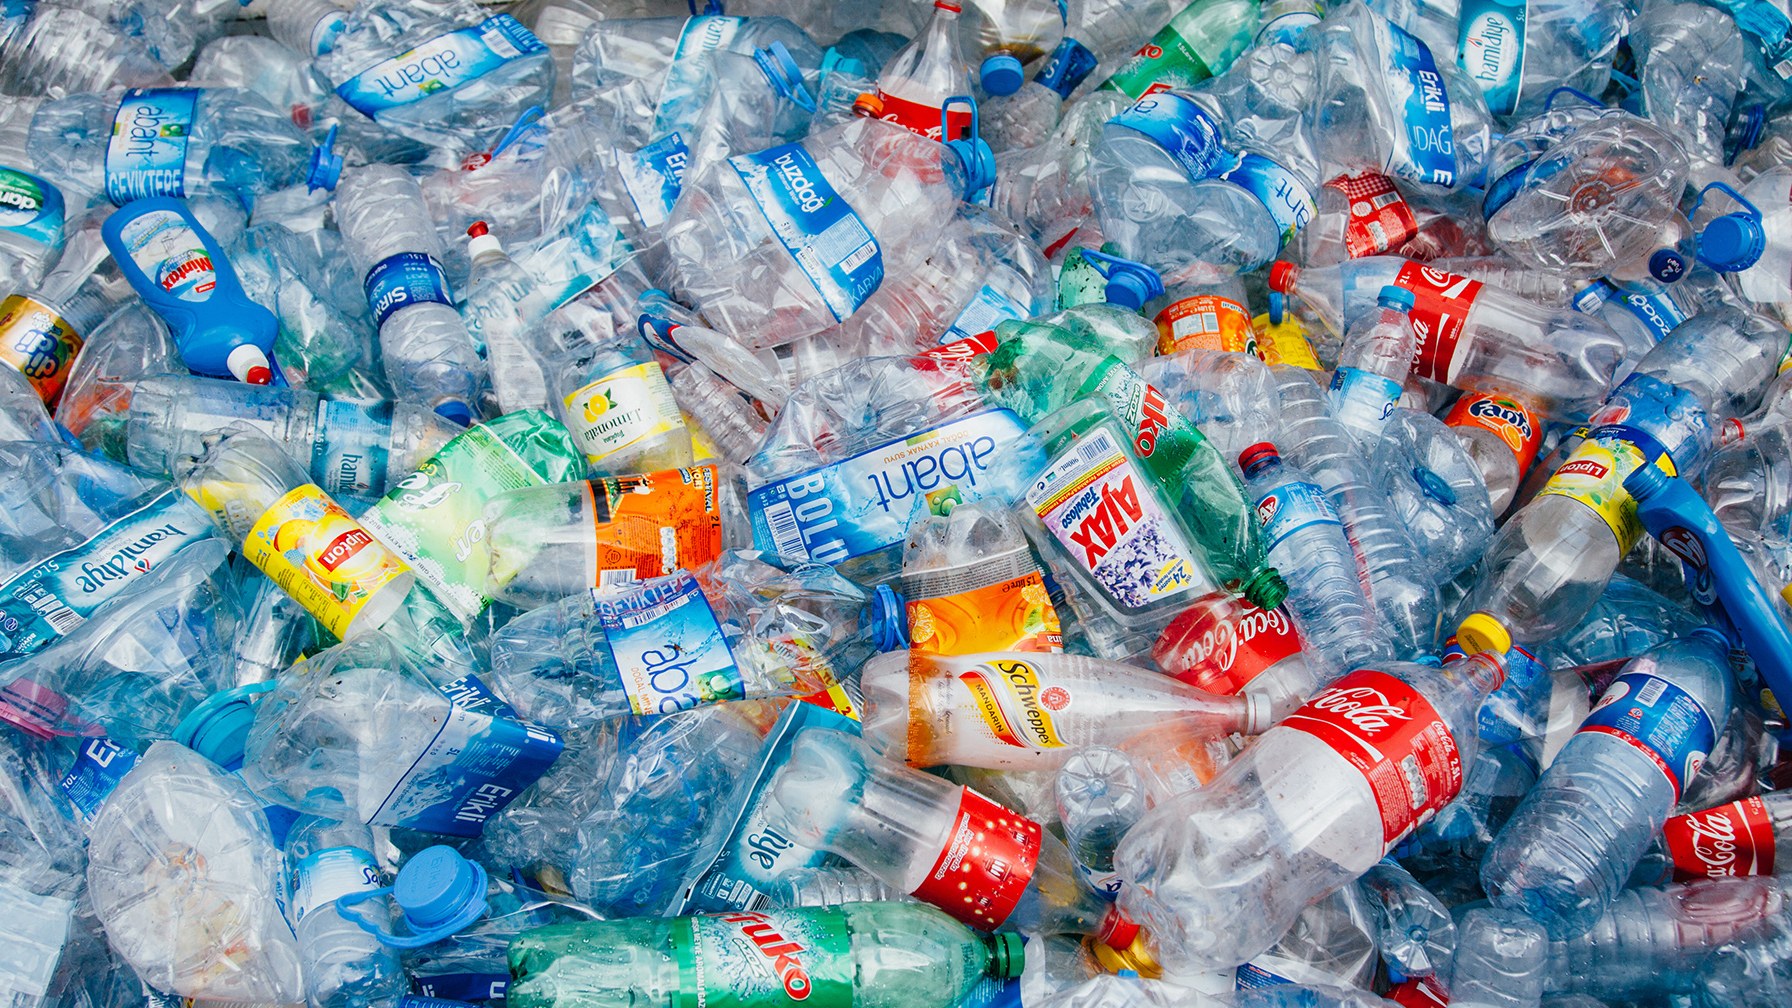 La Comisión de Medio Ambiente convocará a audiencias públicas sobre economía circular y regulación de plásticos